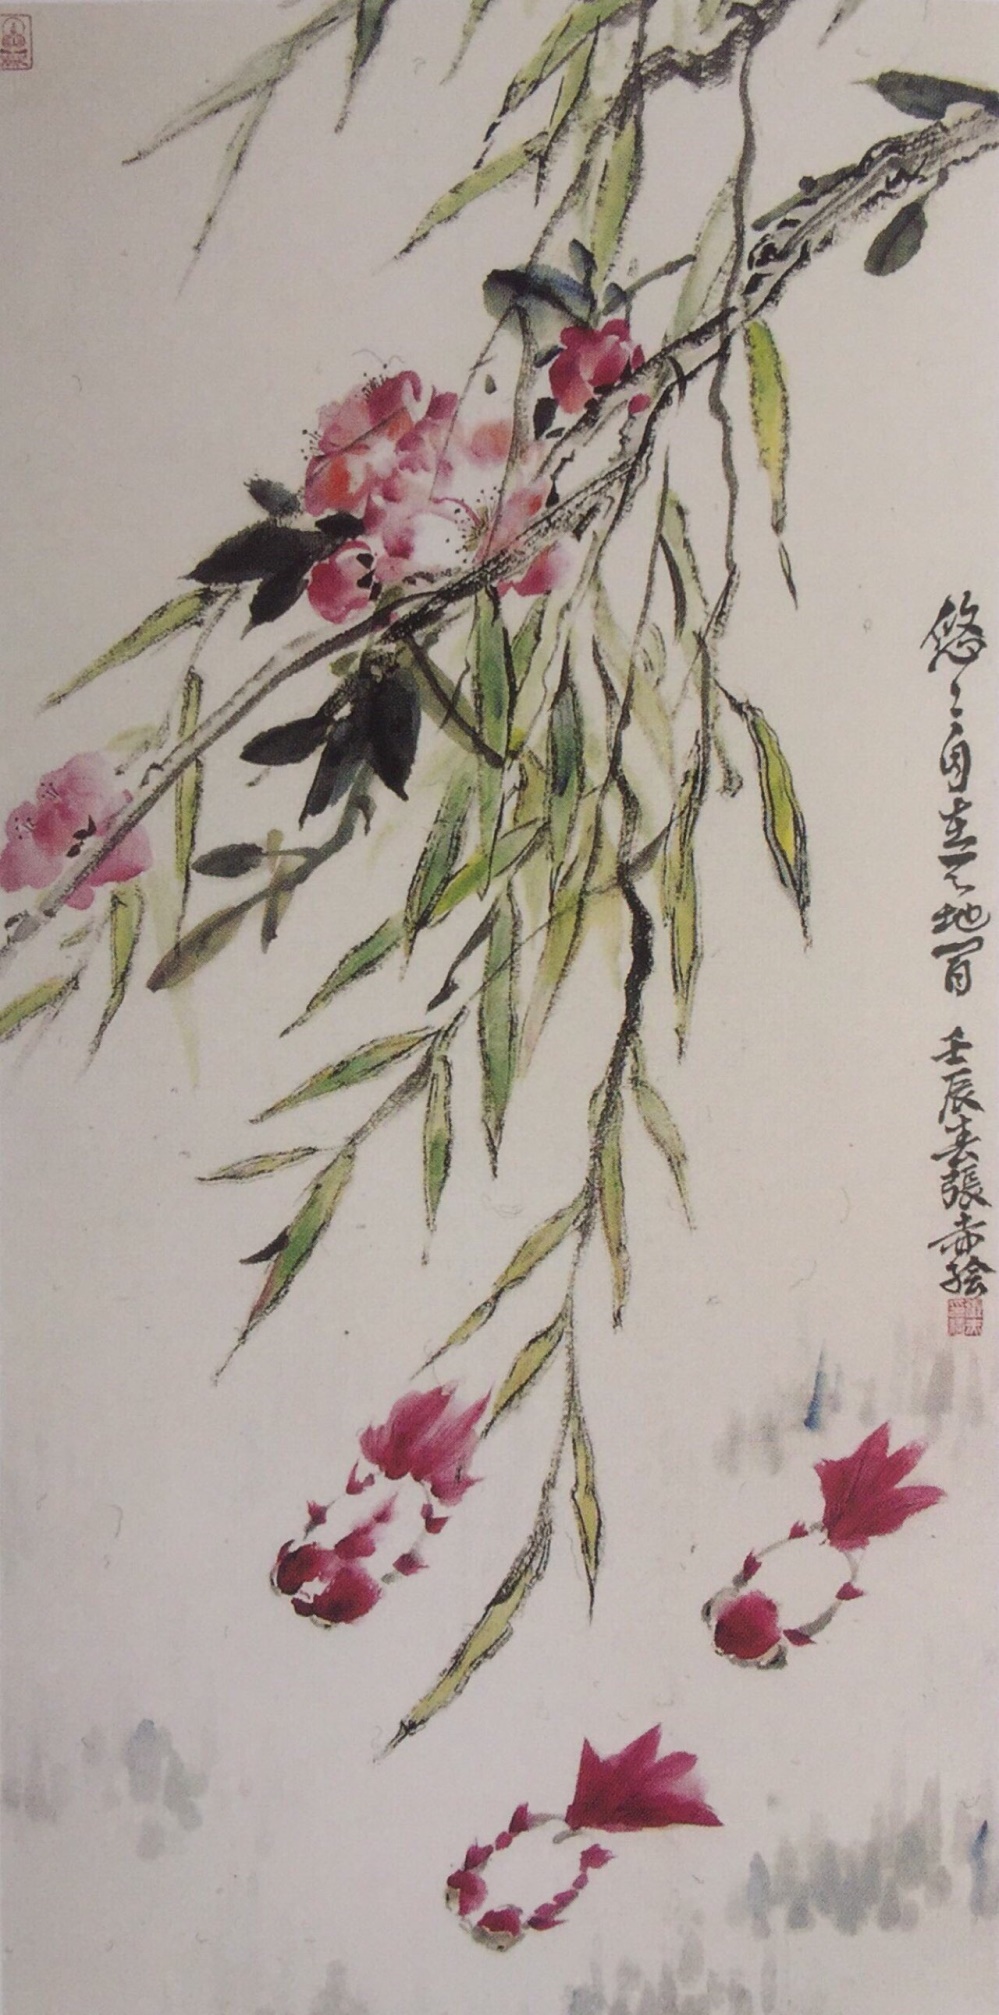 中国美术学院美术考级花鸟画考级五级(中级)示范图例。